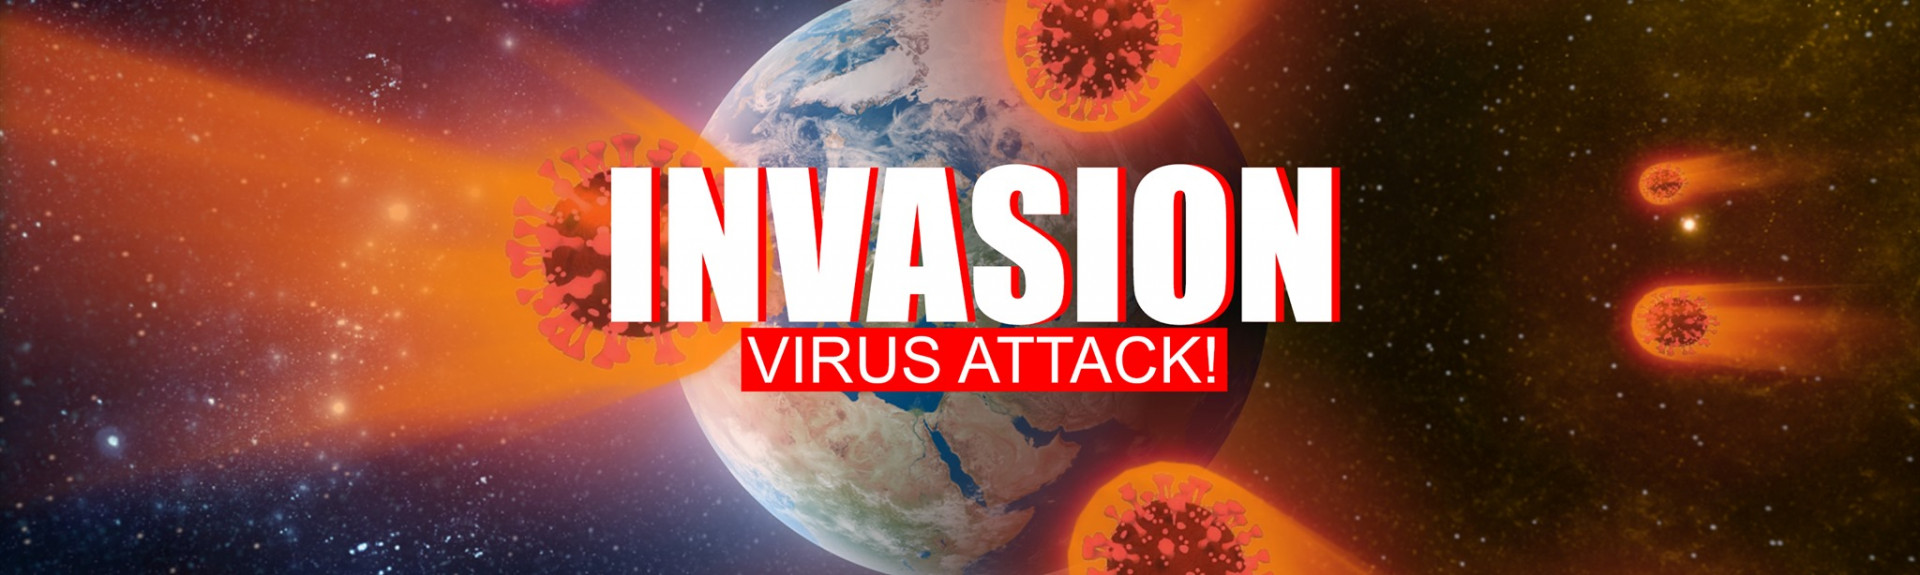 Invasion: Virus Attack!